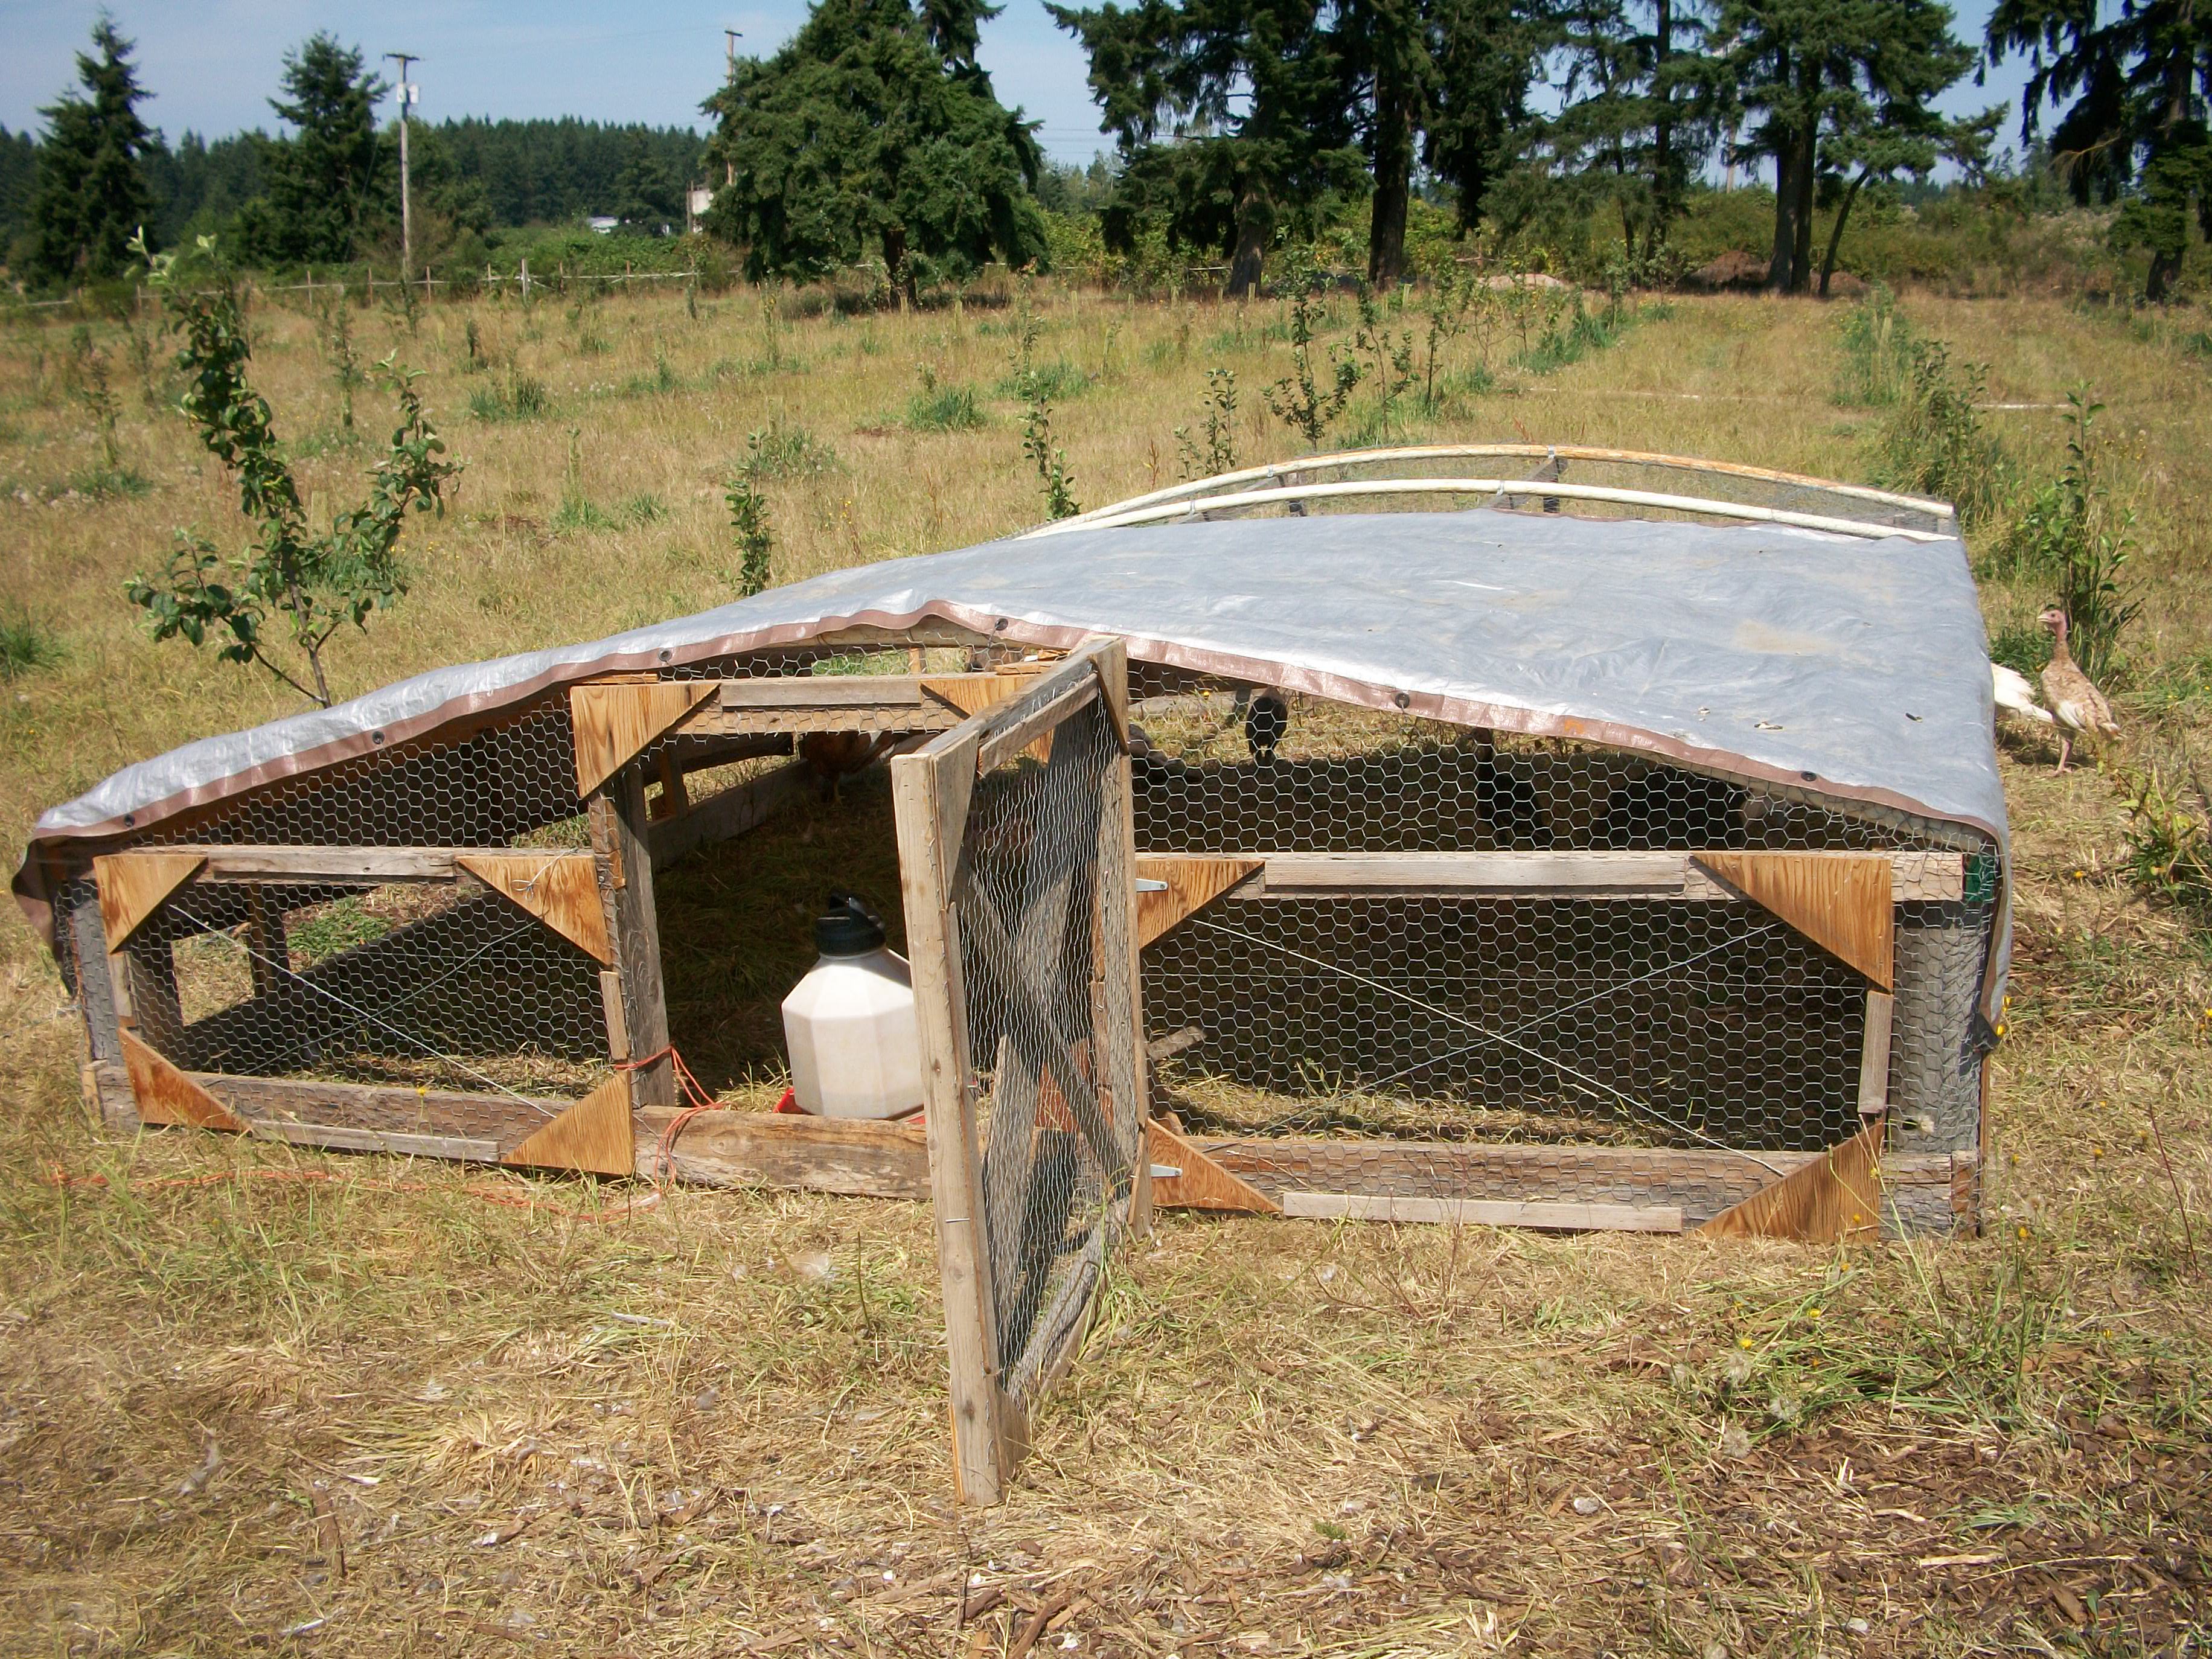 Raising Solar Chickens?